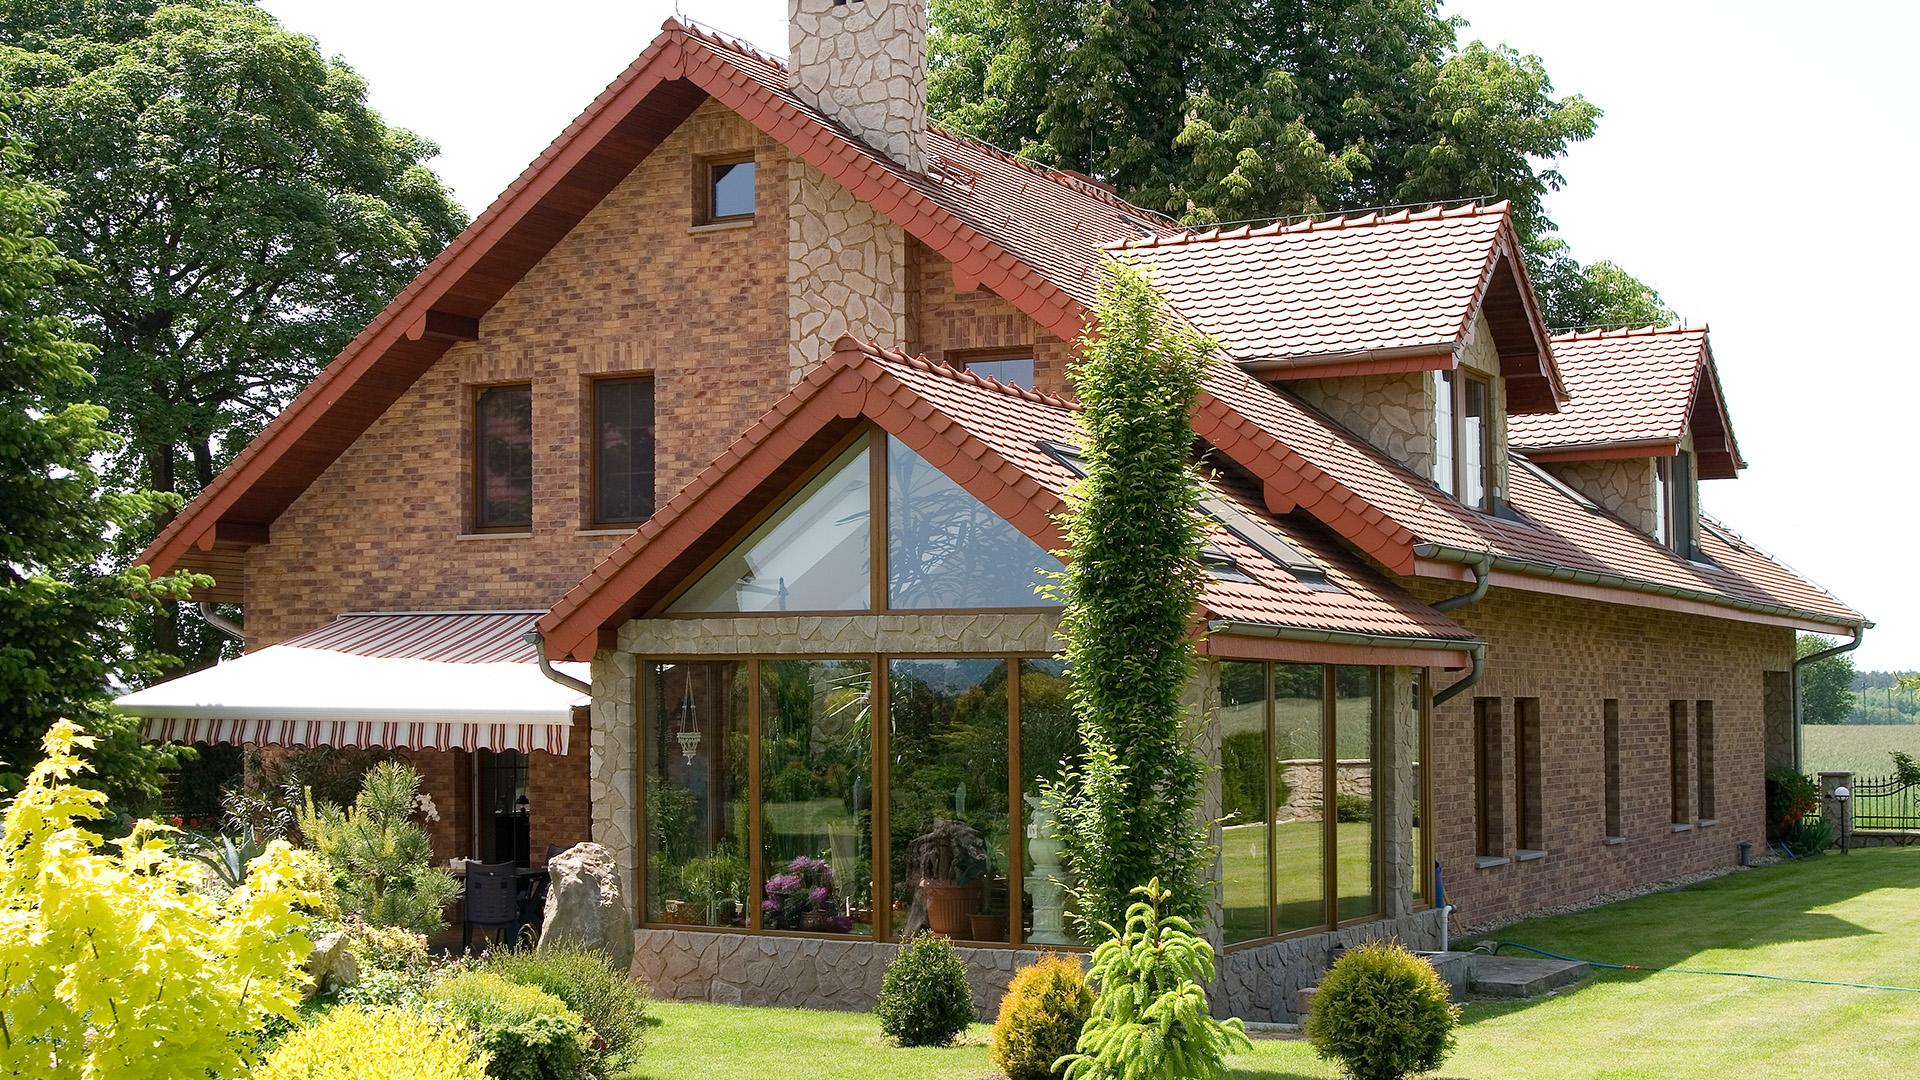 Einfalmienhause mit Stegu country Verblnder auf Fassade und Jura Cream auf dem Schornstein - schick und country style